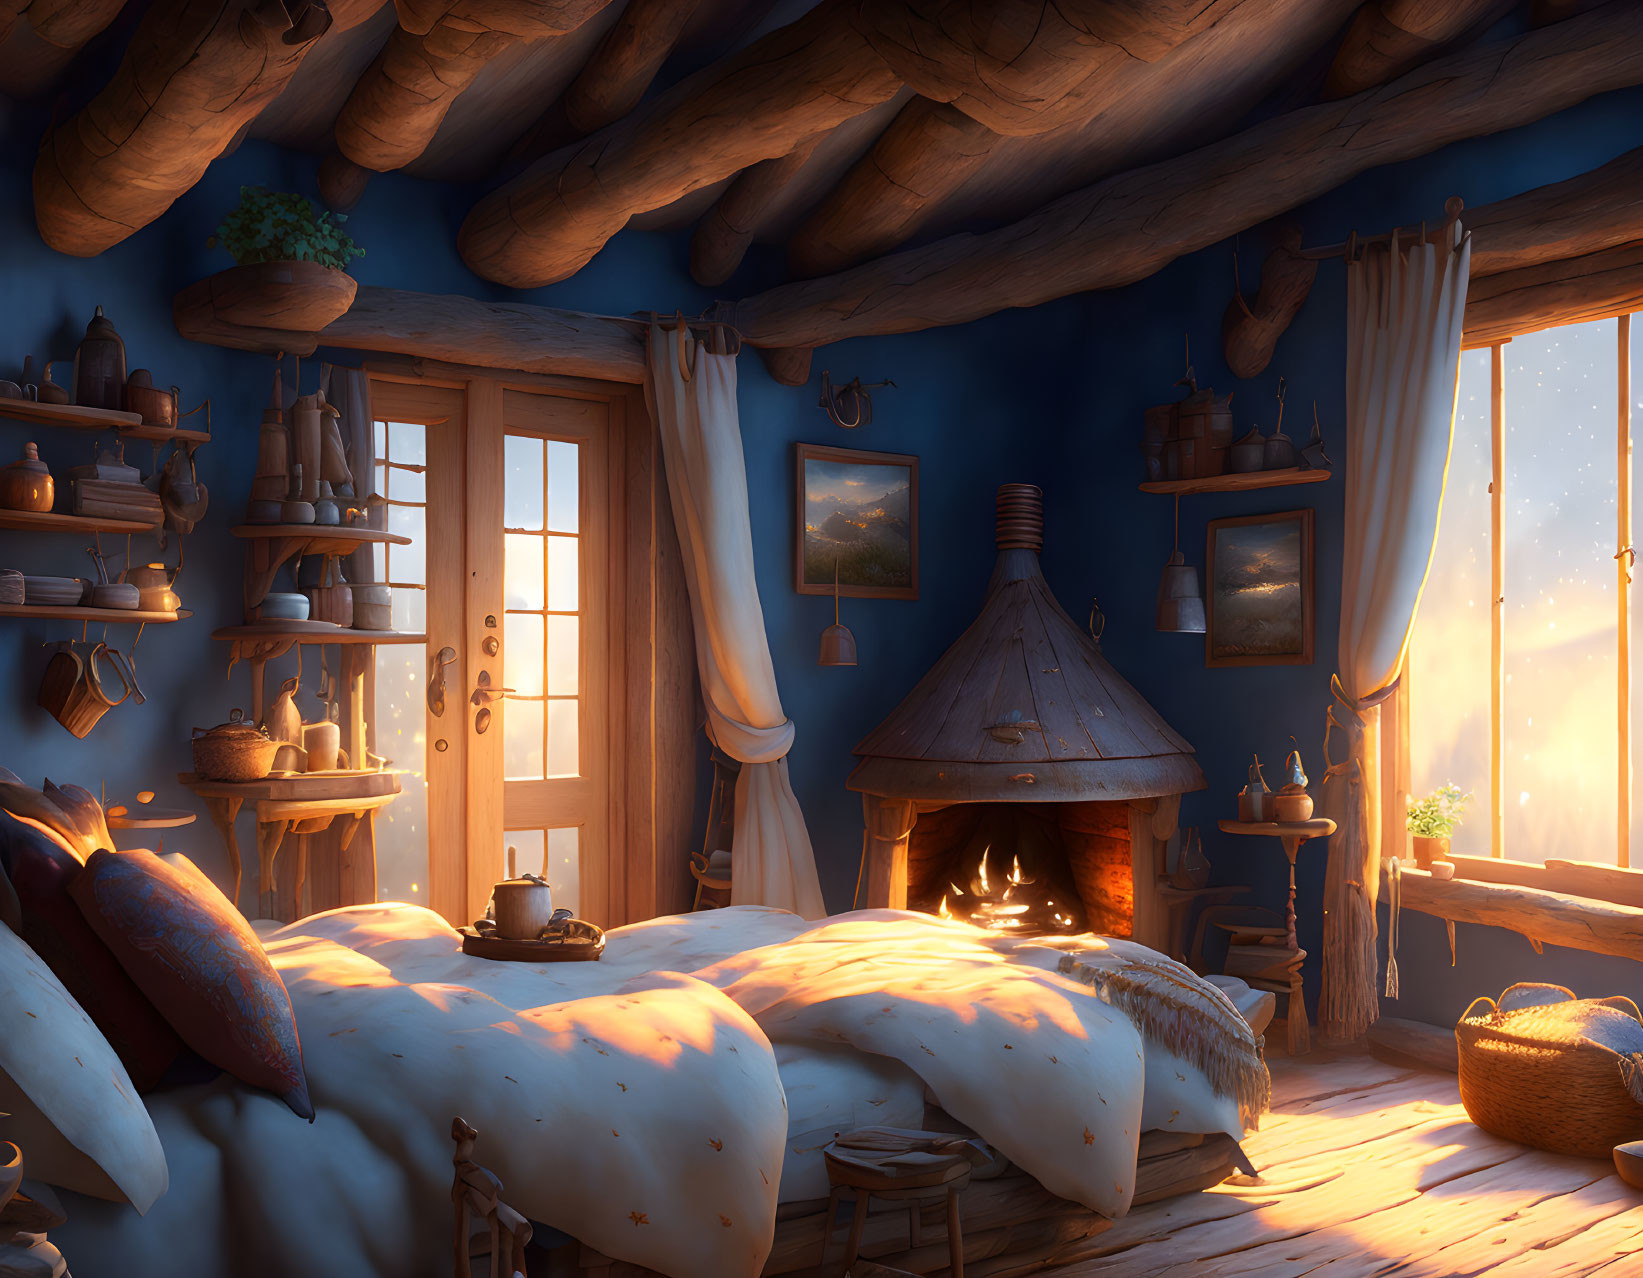 Rustic cozy room